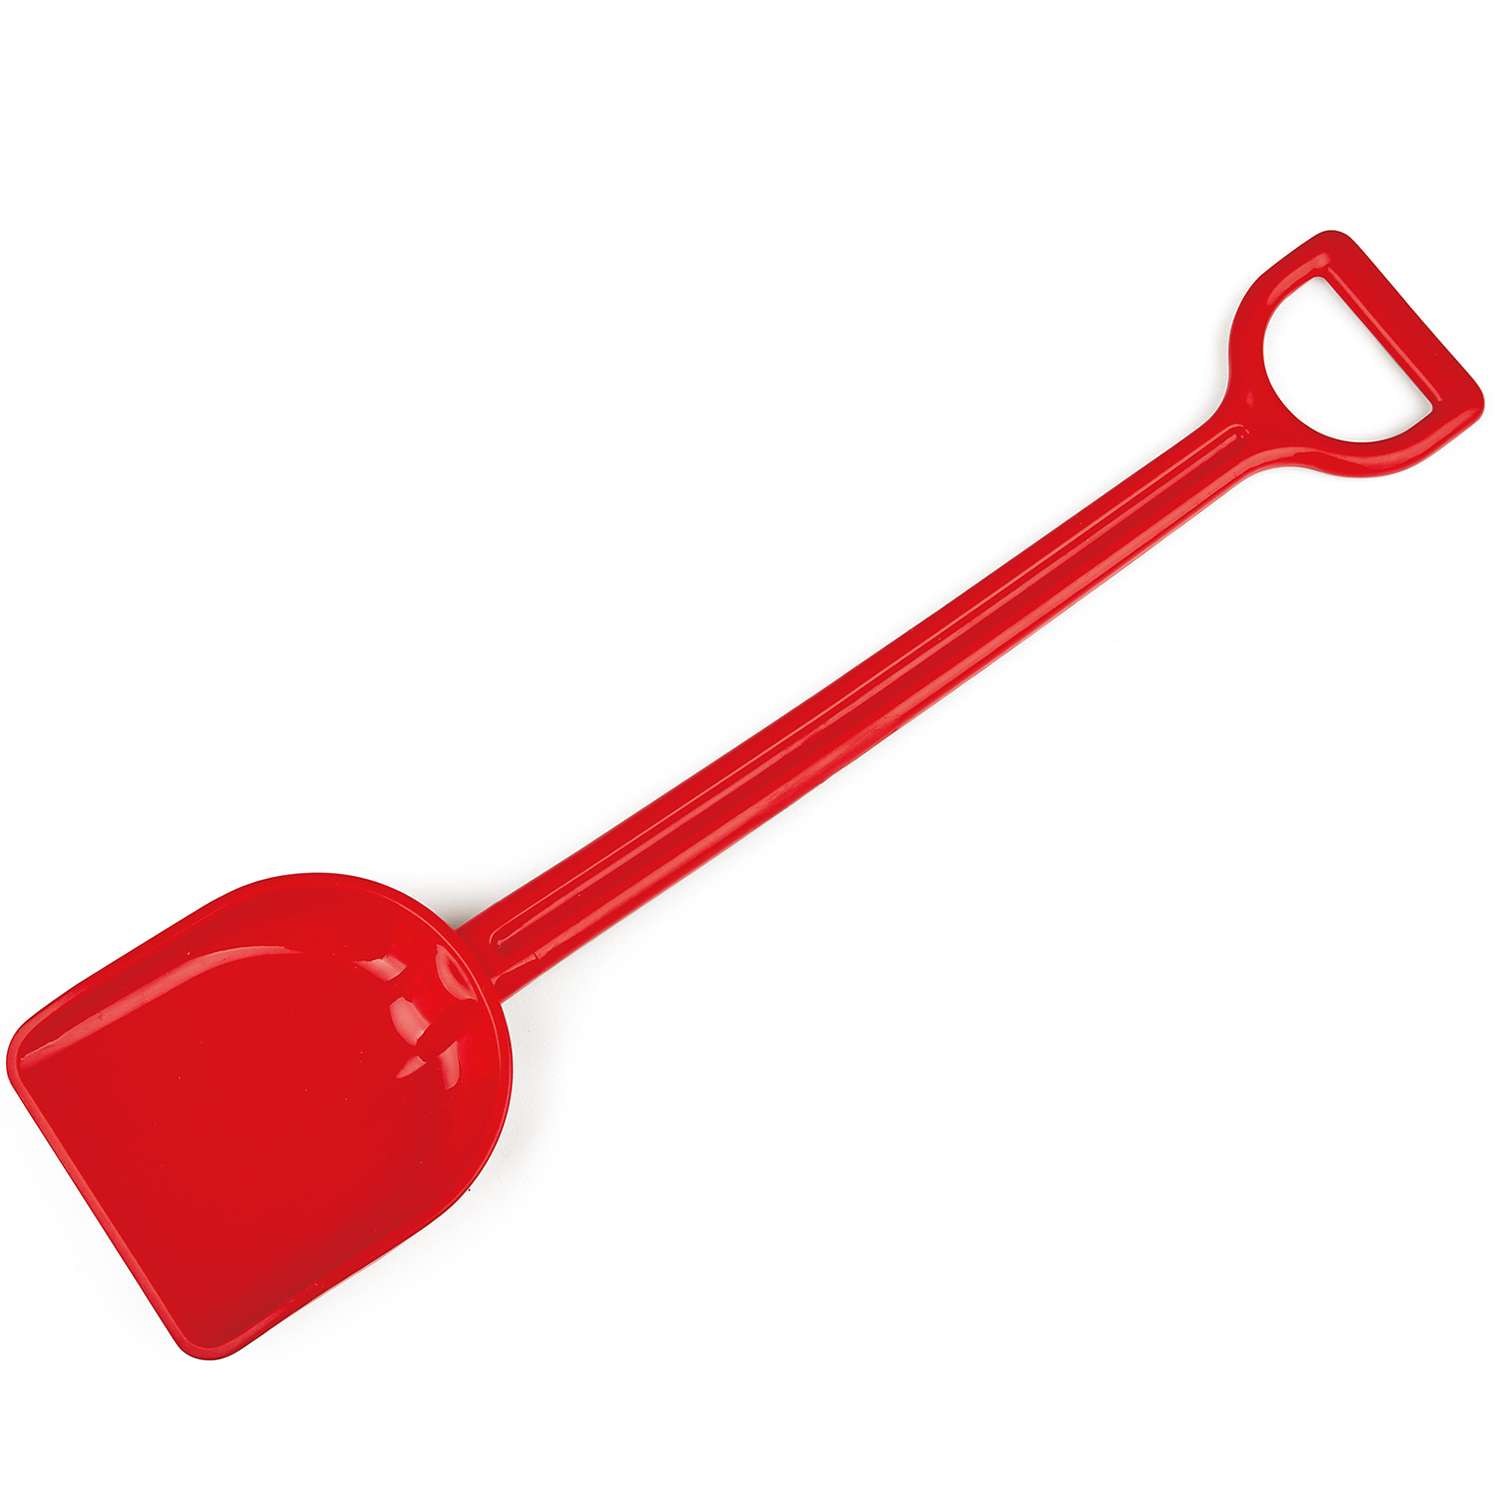 Игрушка для игры на пляже HAPE детская красная лопата для песка 40 см. - фото 2